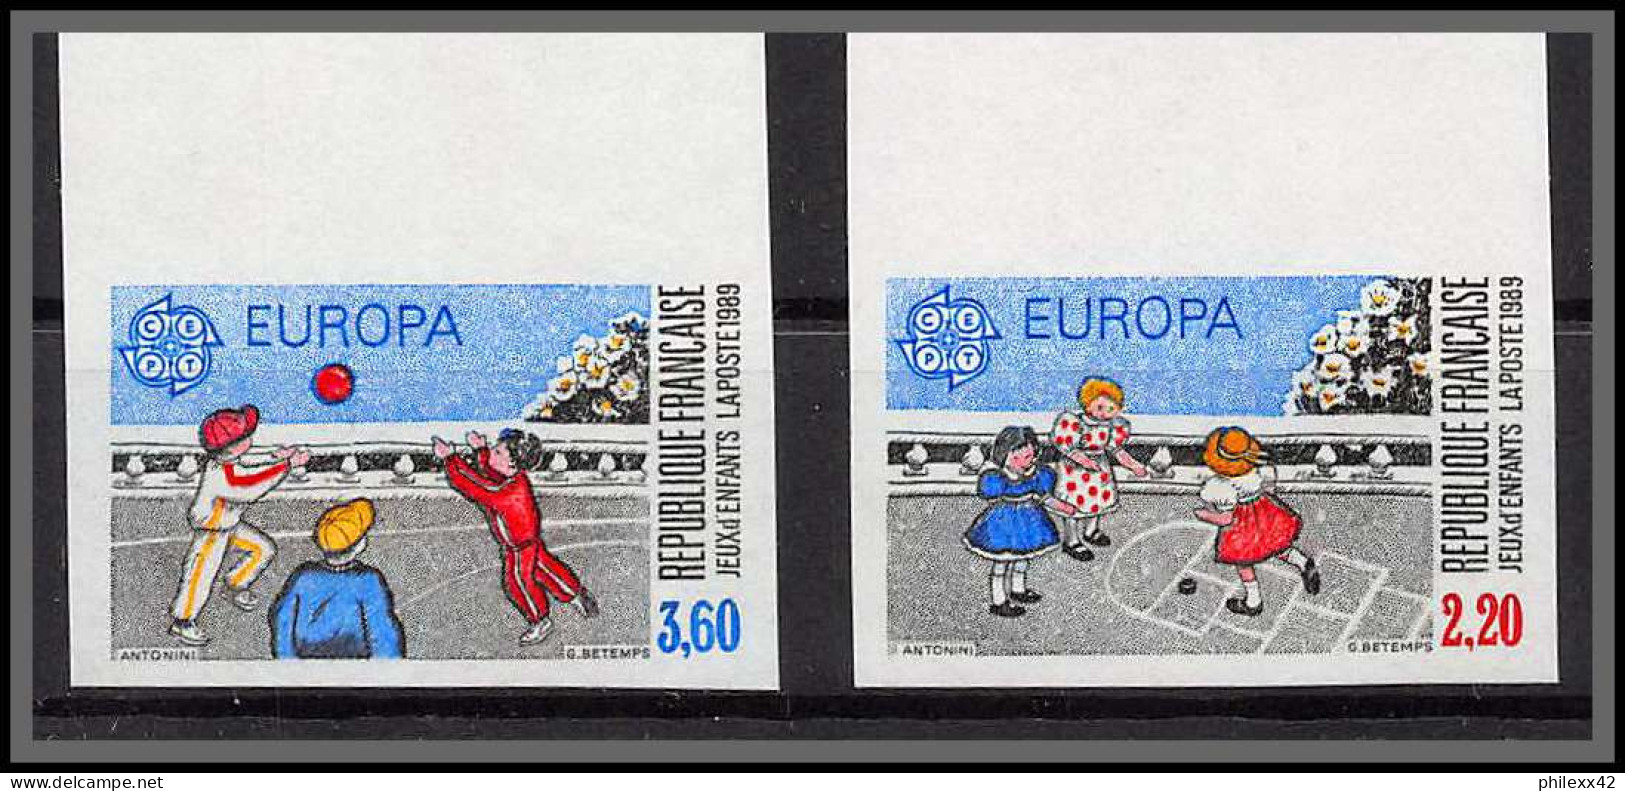 France N°2584/2585 Europa 1989 Jeux D'enfants La Marelle Balle Child Games Non Dentelé ** MNH Imperf  - 1981-1990